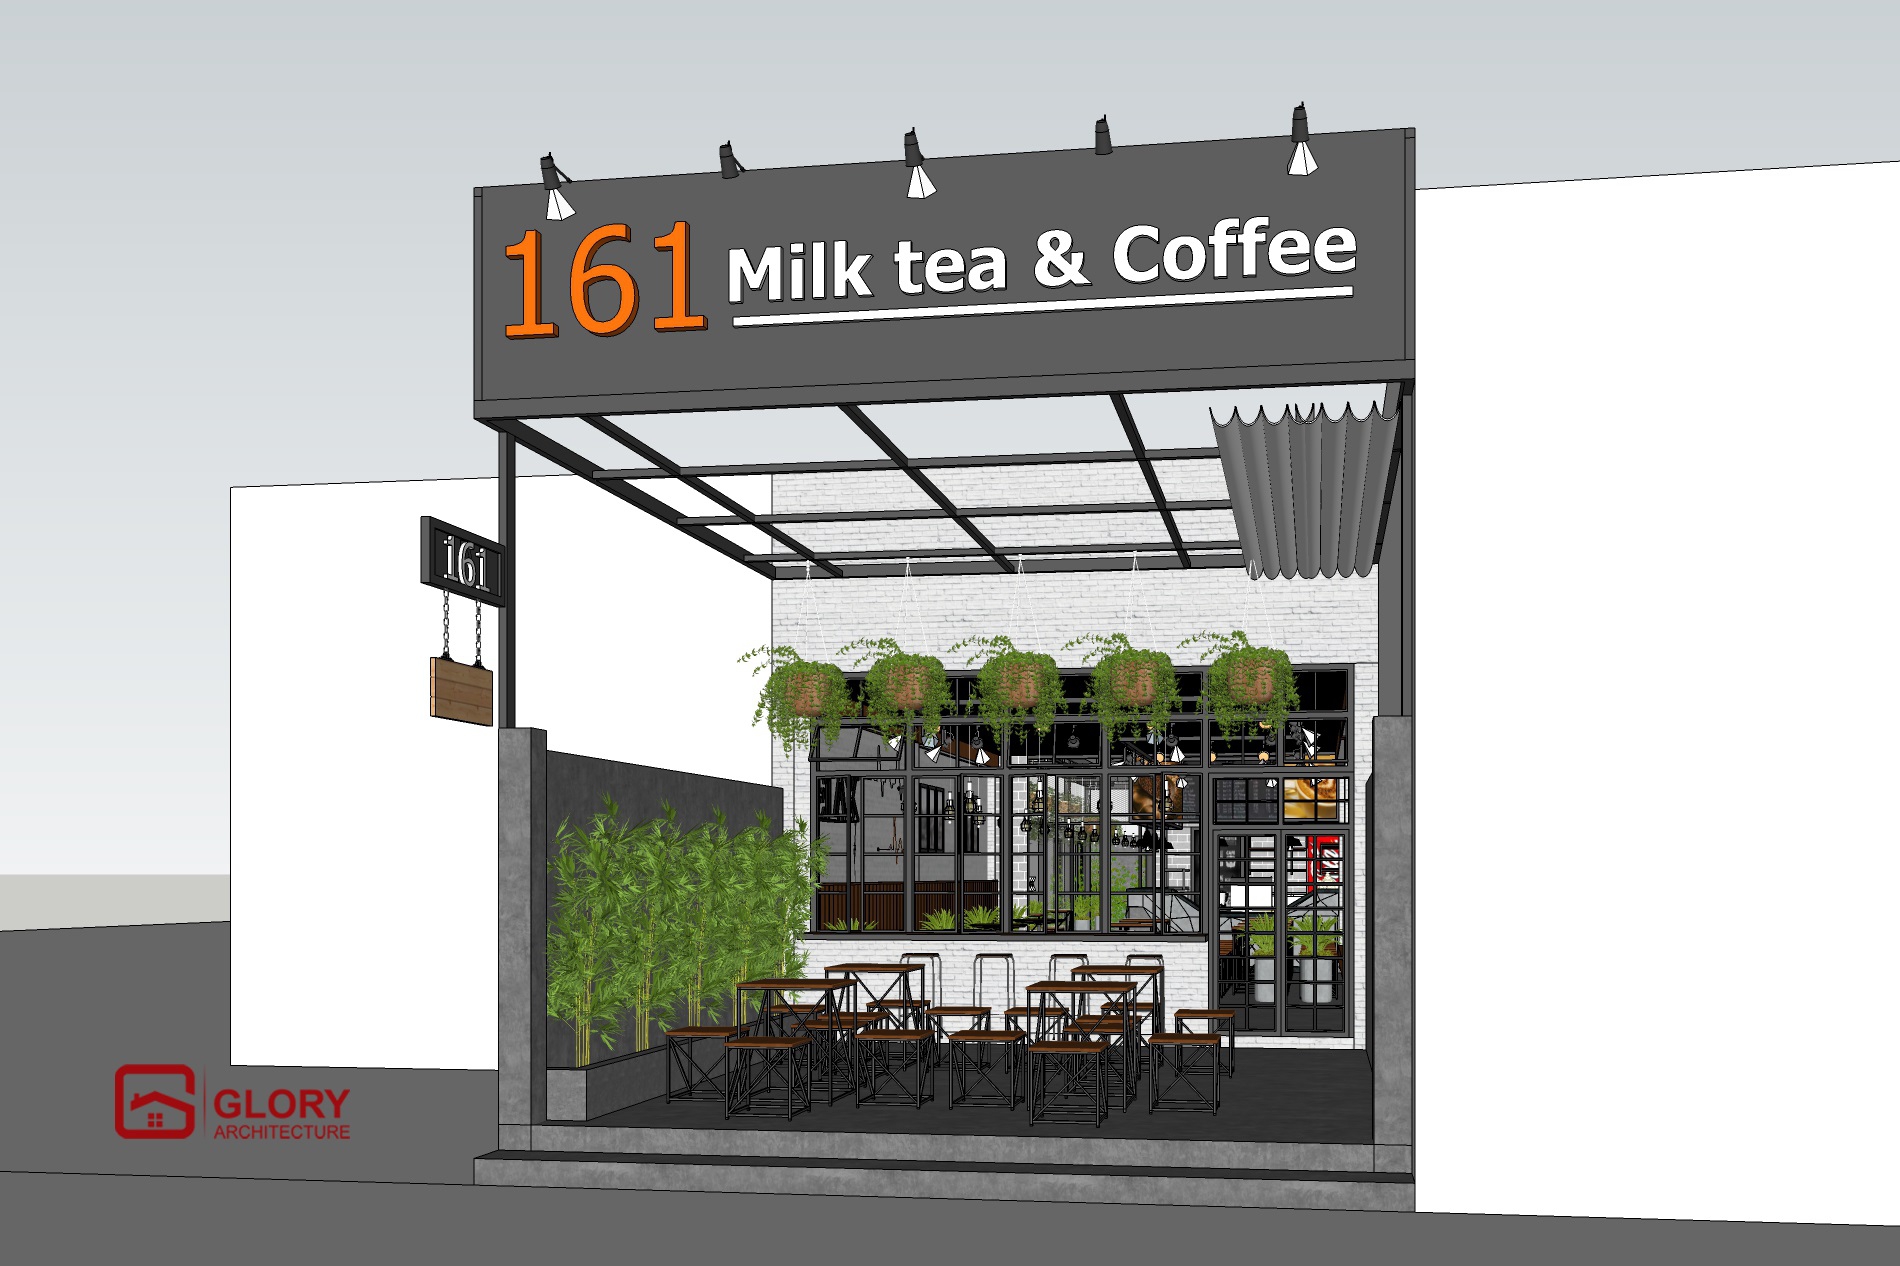 161 Coffee & Milk Tea